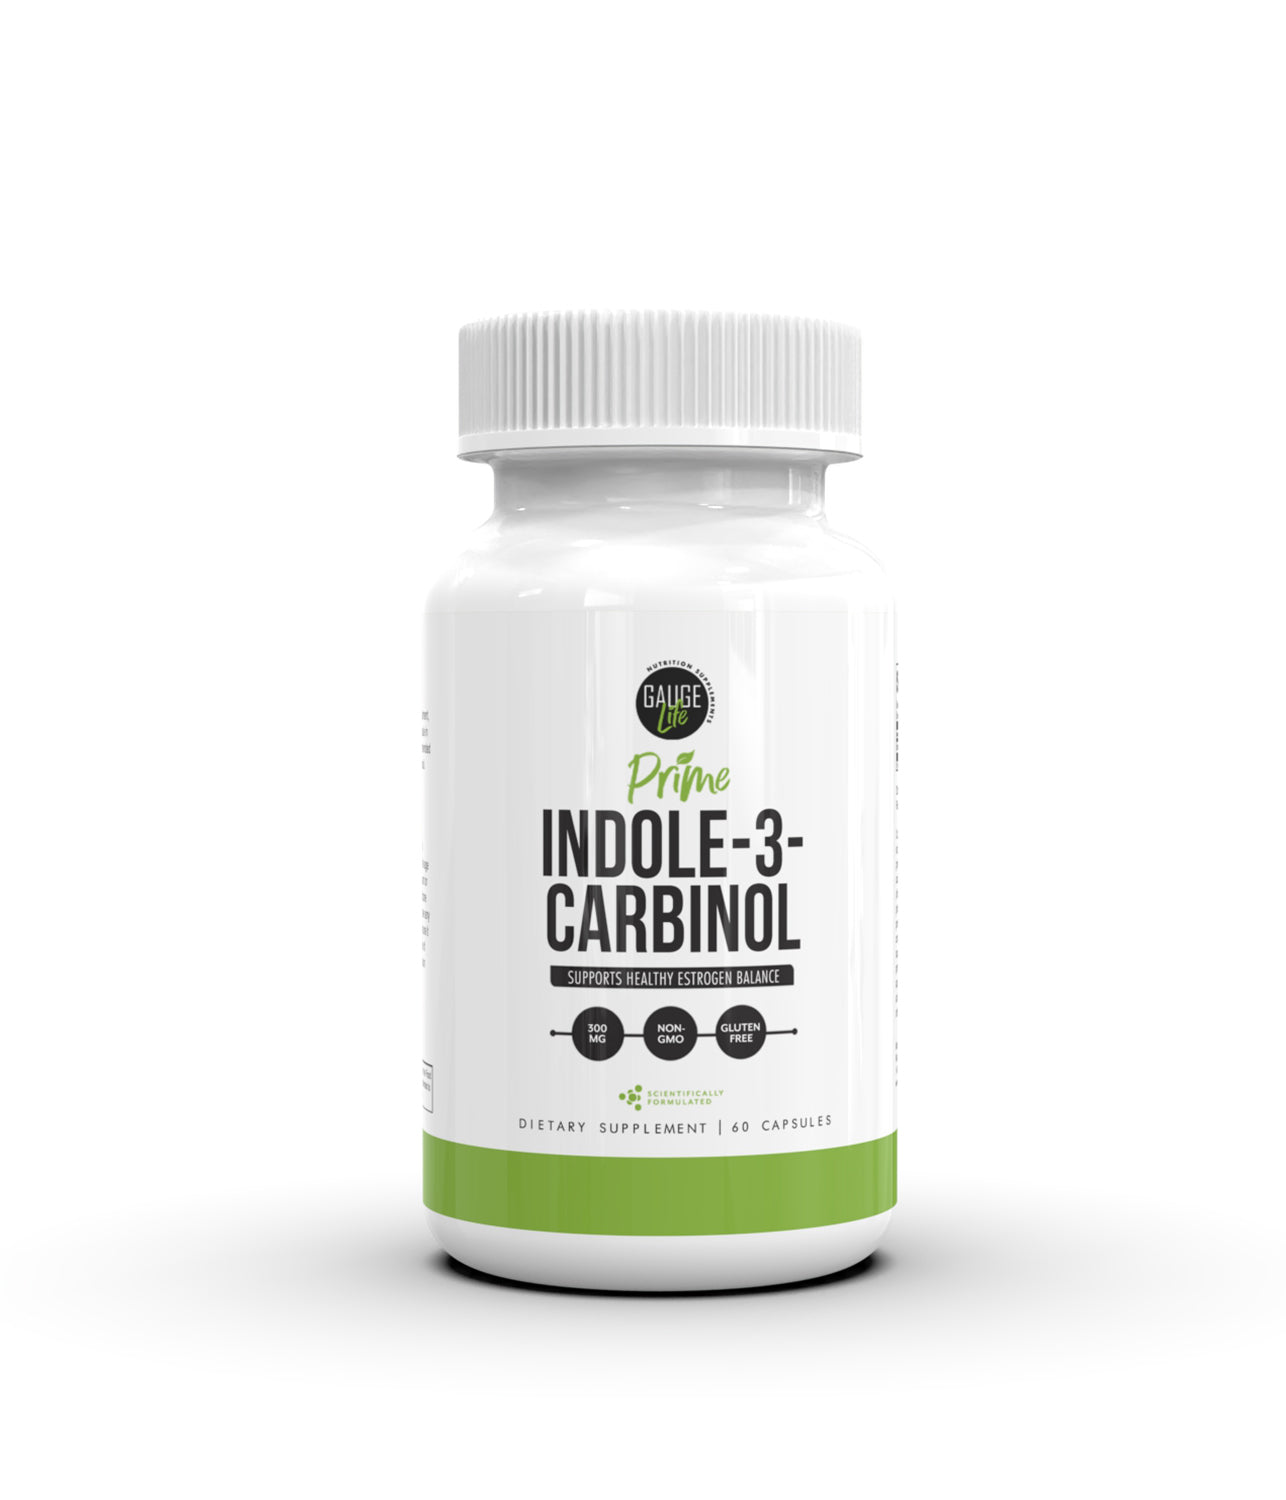 Prime Indole-3-Carbinol